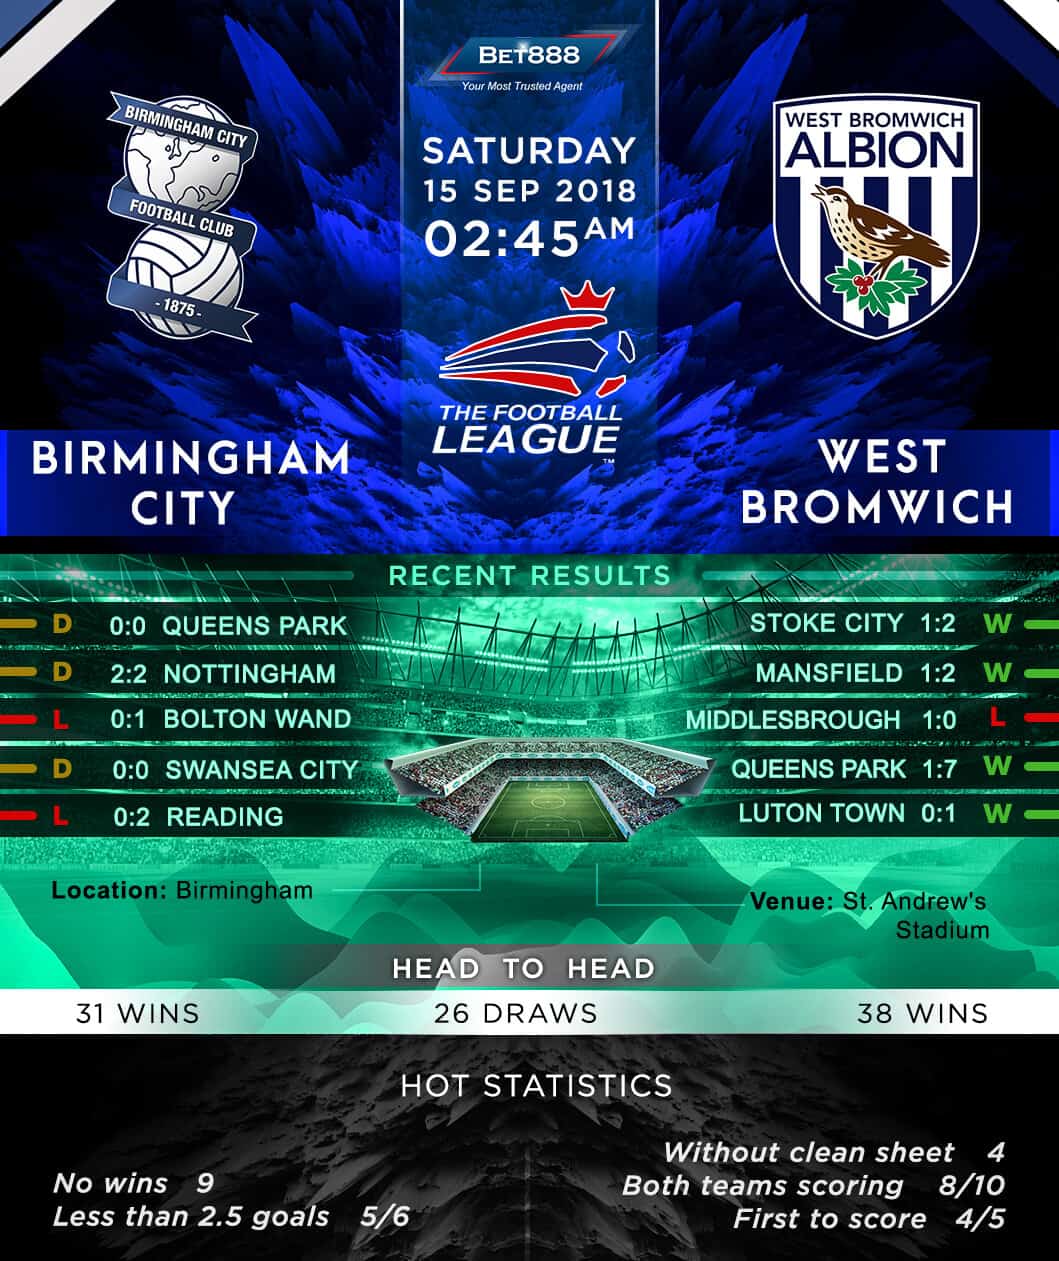 Birmingham City vs West Bromwich Albion 15/09/18